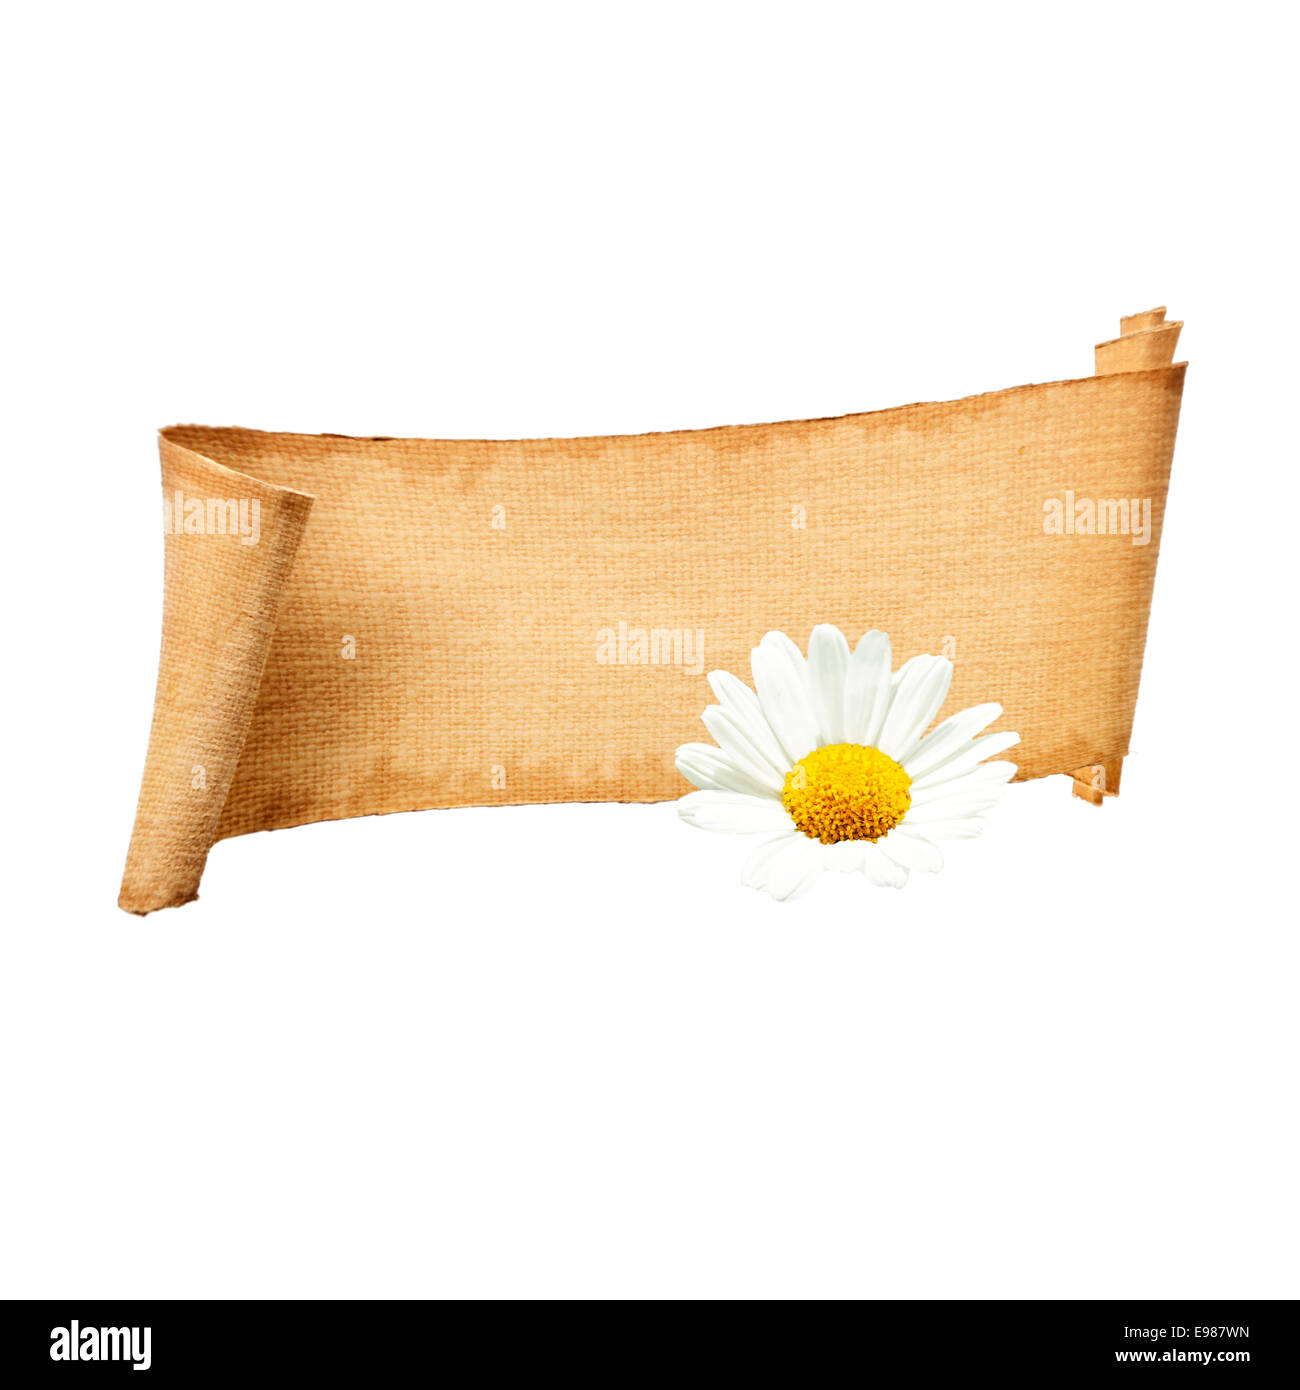 Isolierte Papier Banner mit blühenden Marguerite oder Daisy Blume. Mit einigen Exemplar und Freiraum für Ihre eigenen Absichten. Stockfoto